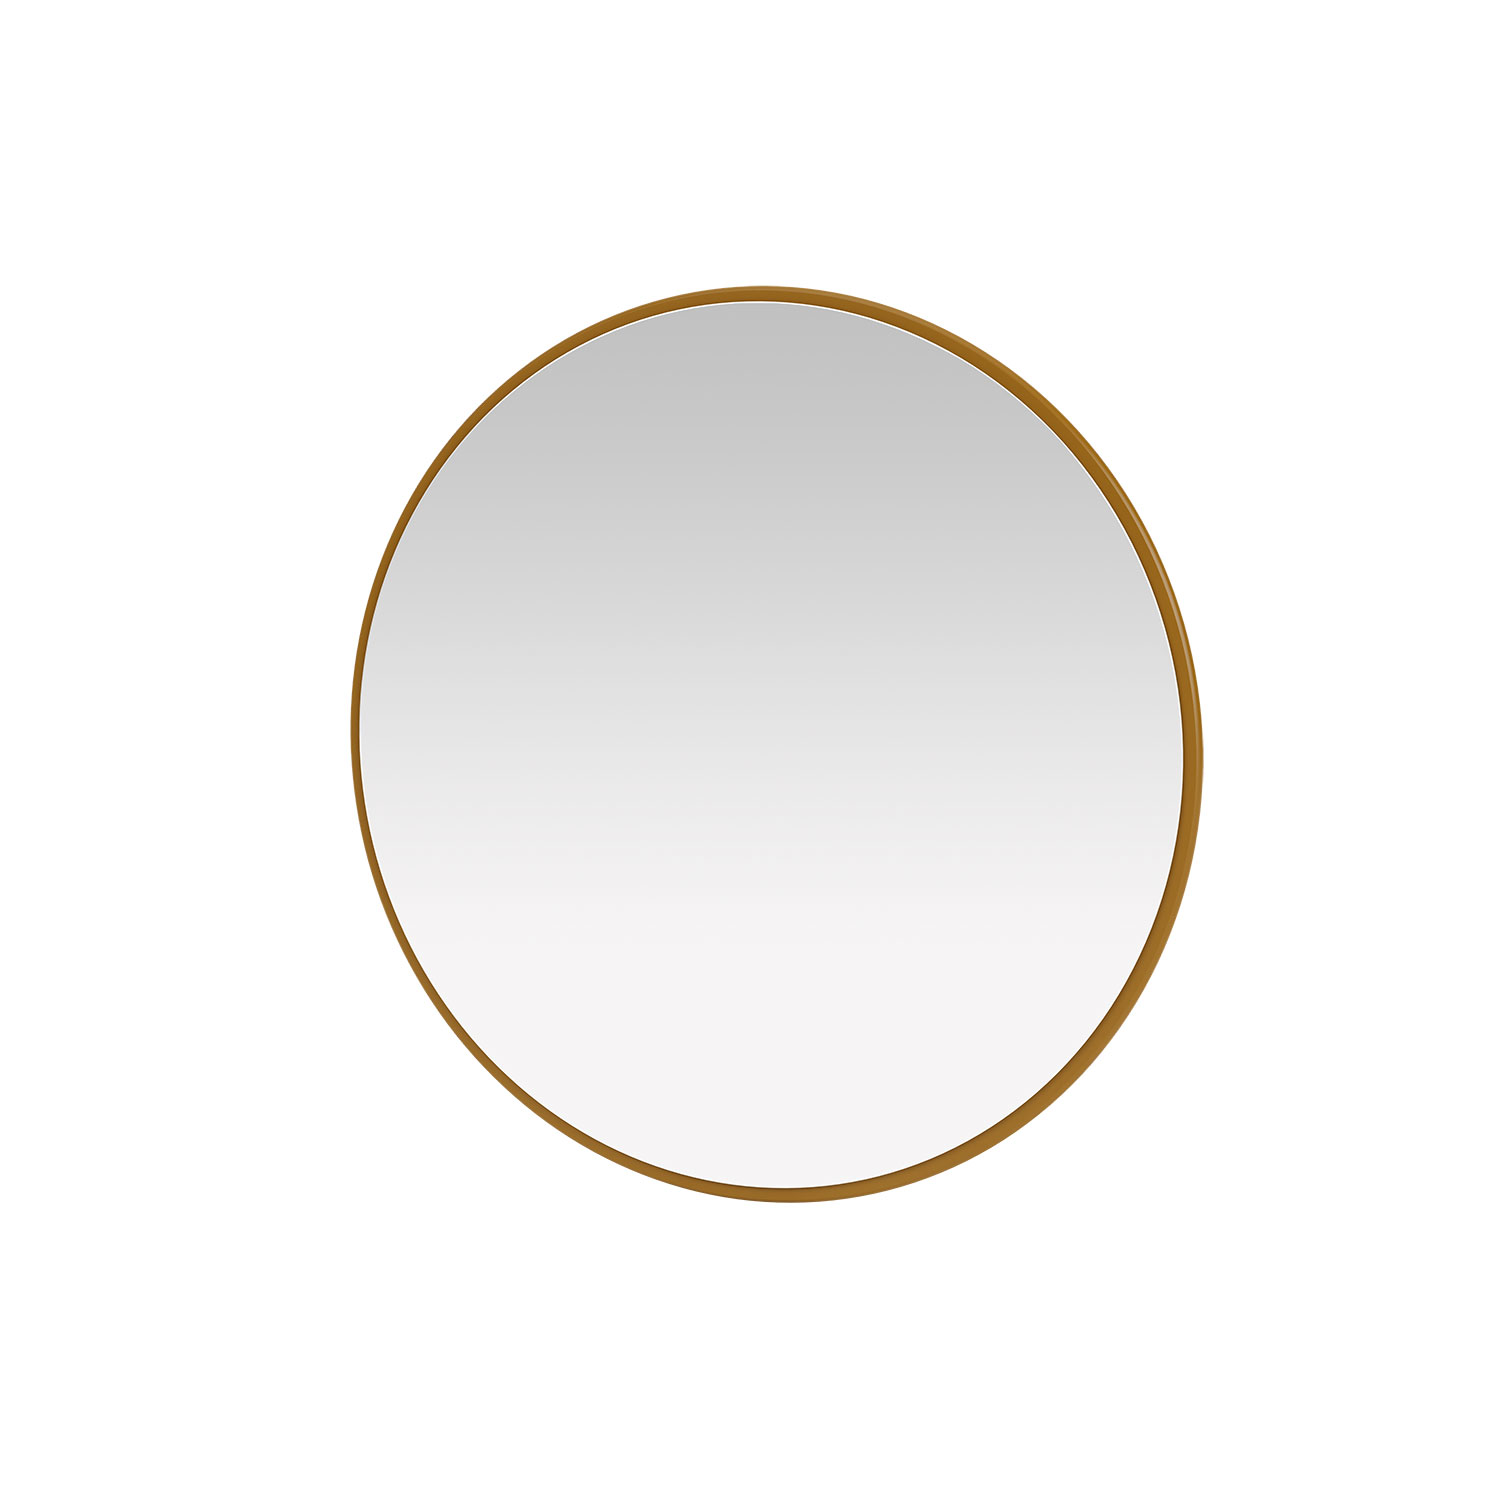 AROUND mirror, 19 colors